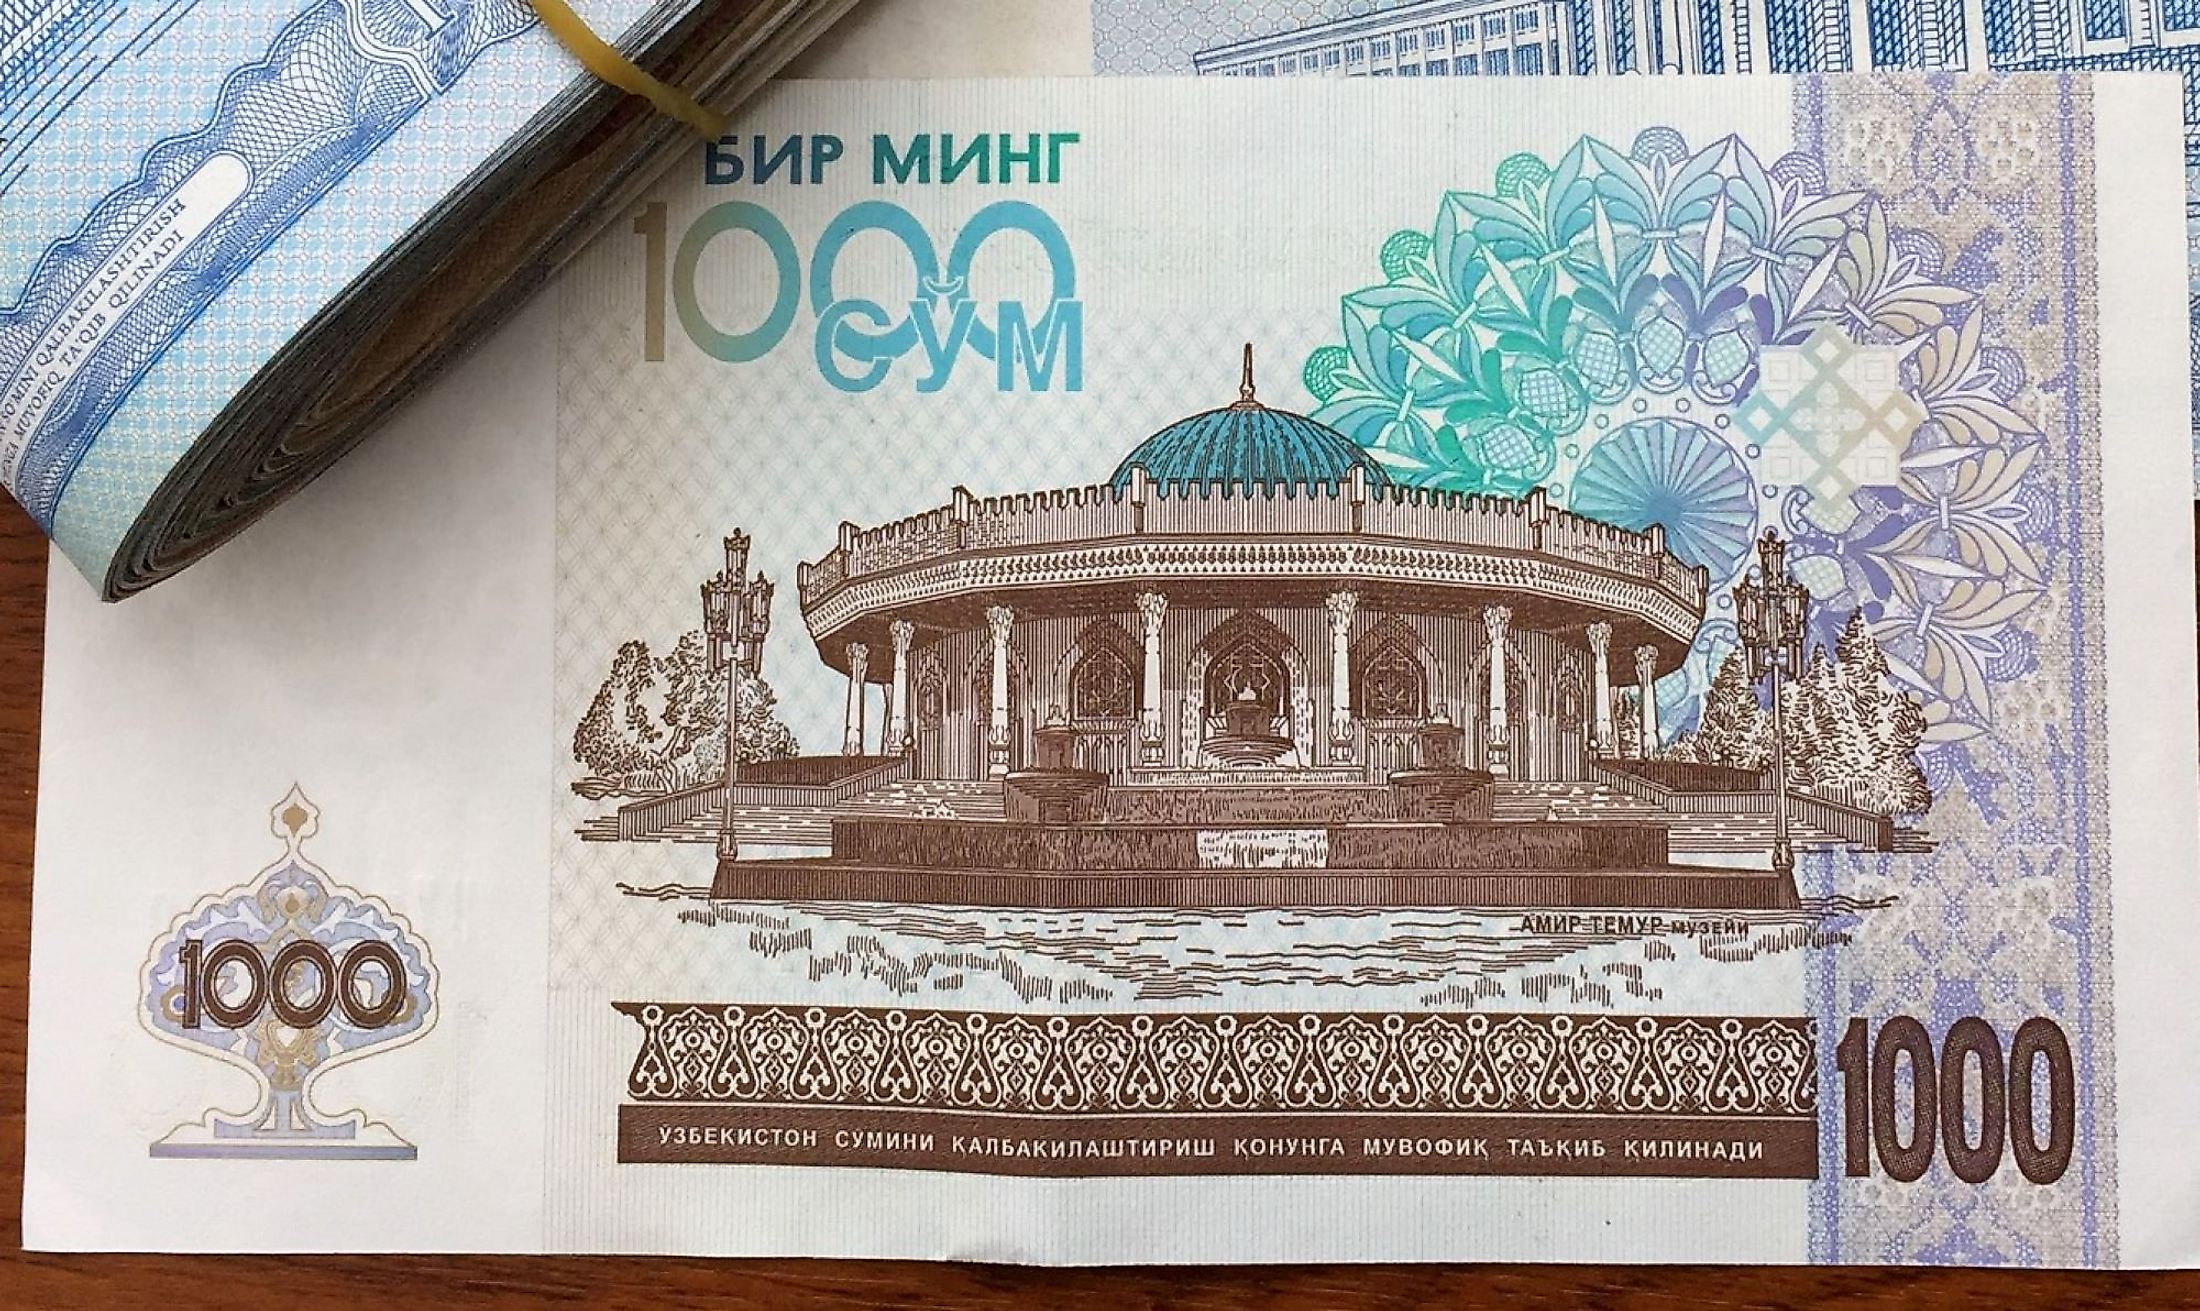 uzbekistan travel money